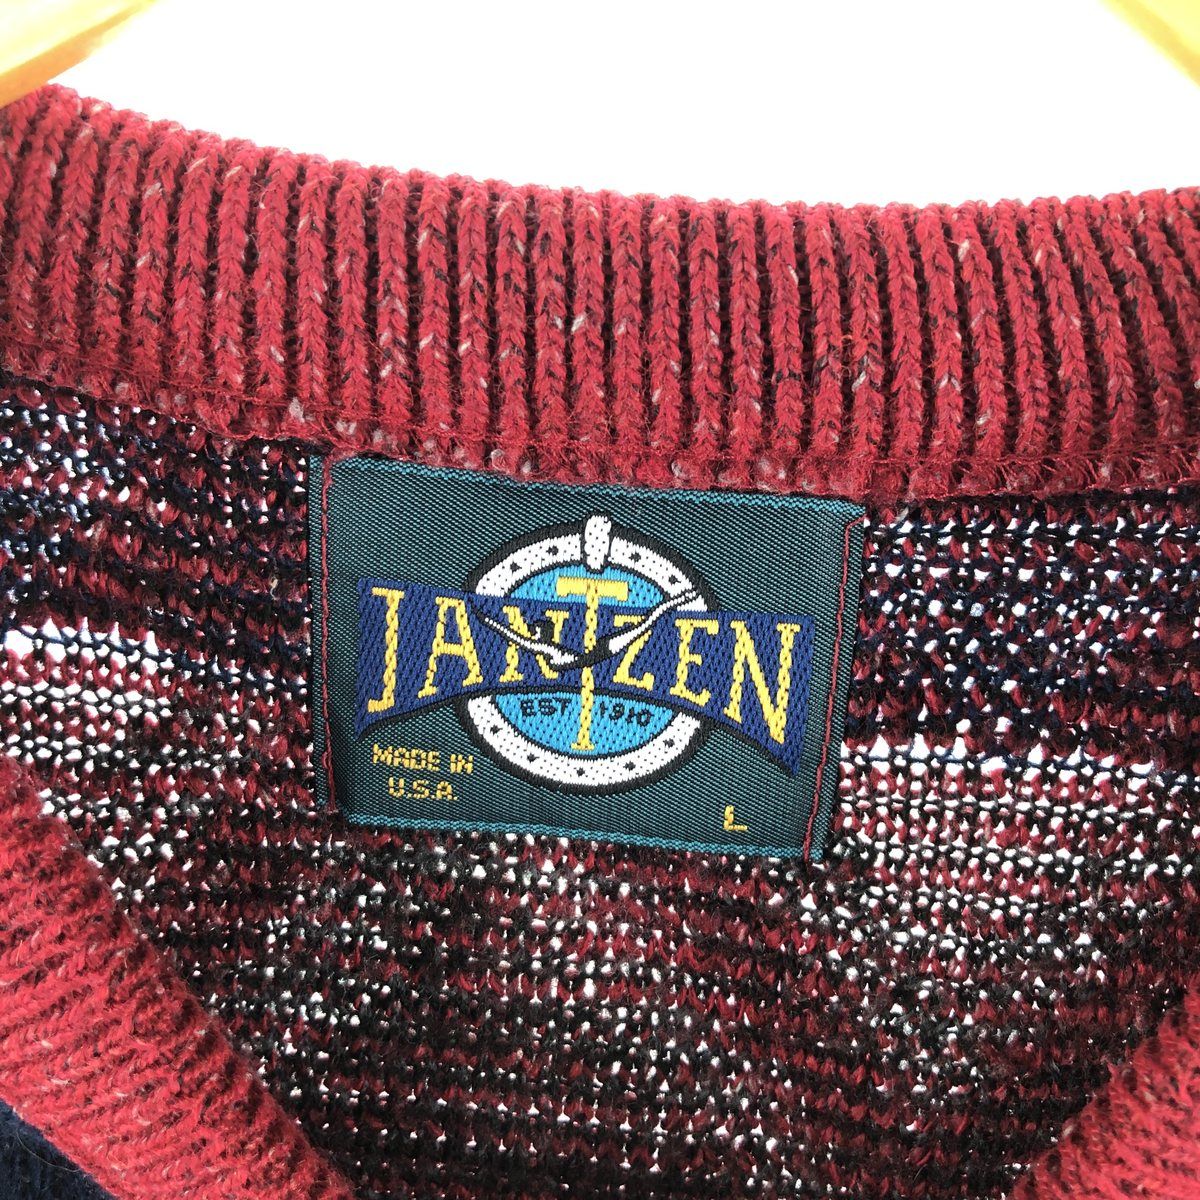 JANTZEN 総柄 ウールニットセーター USA製 メンズXL /eaa353660